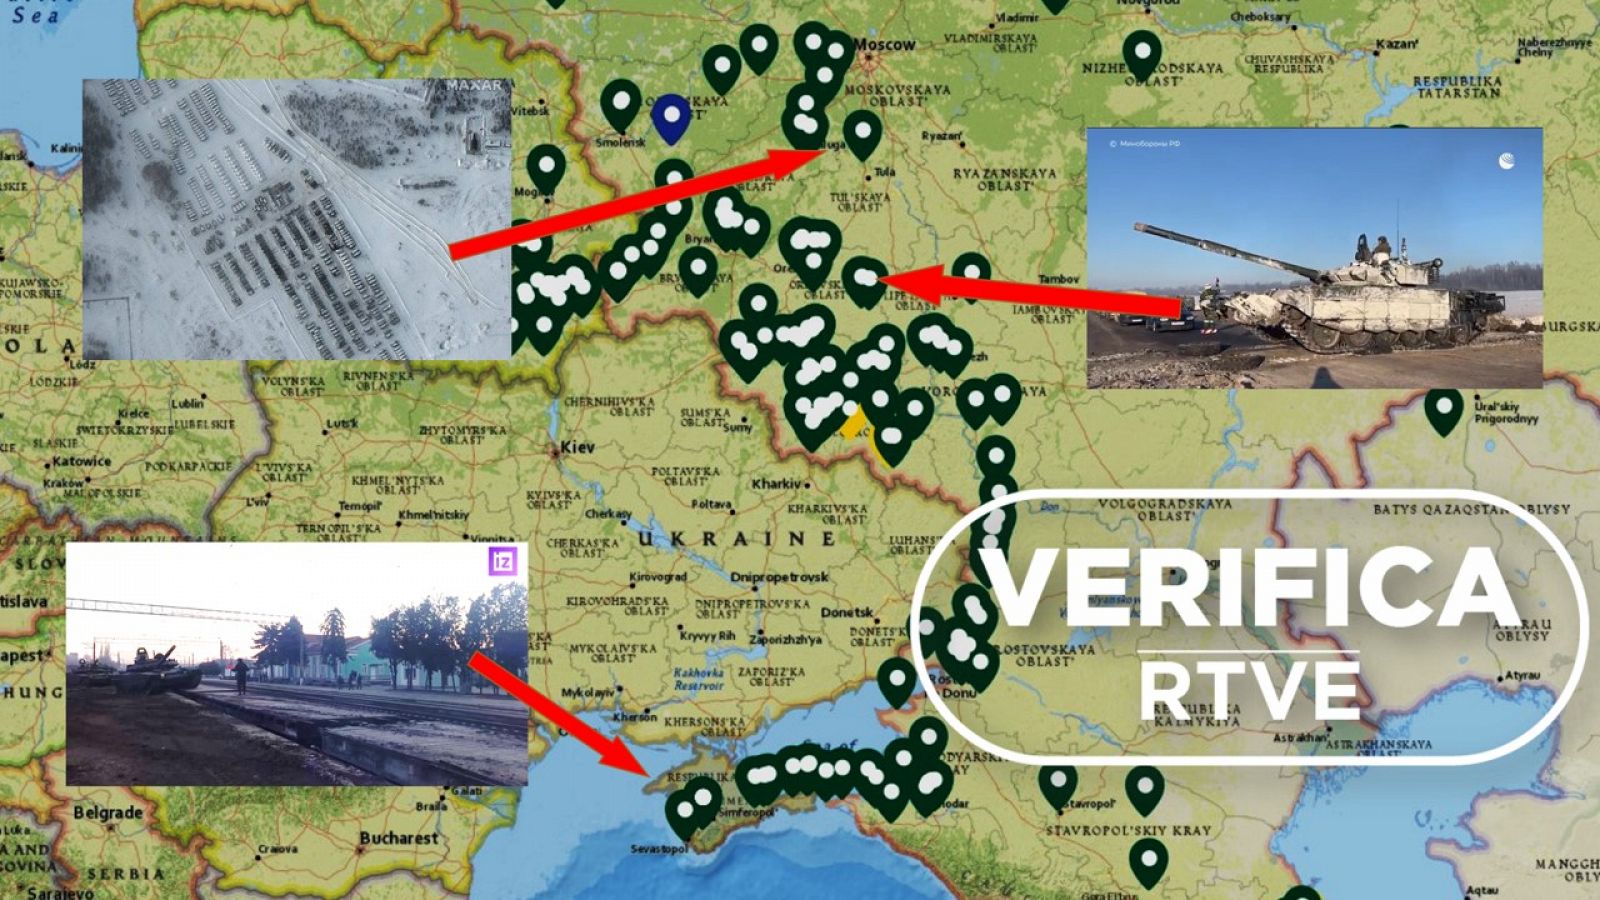 Mapa que muestra puntos donde se han observado despliegues recientes de medios militares rusos, con el sello blanco de VerificaRTVE